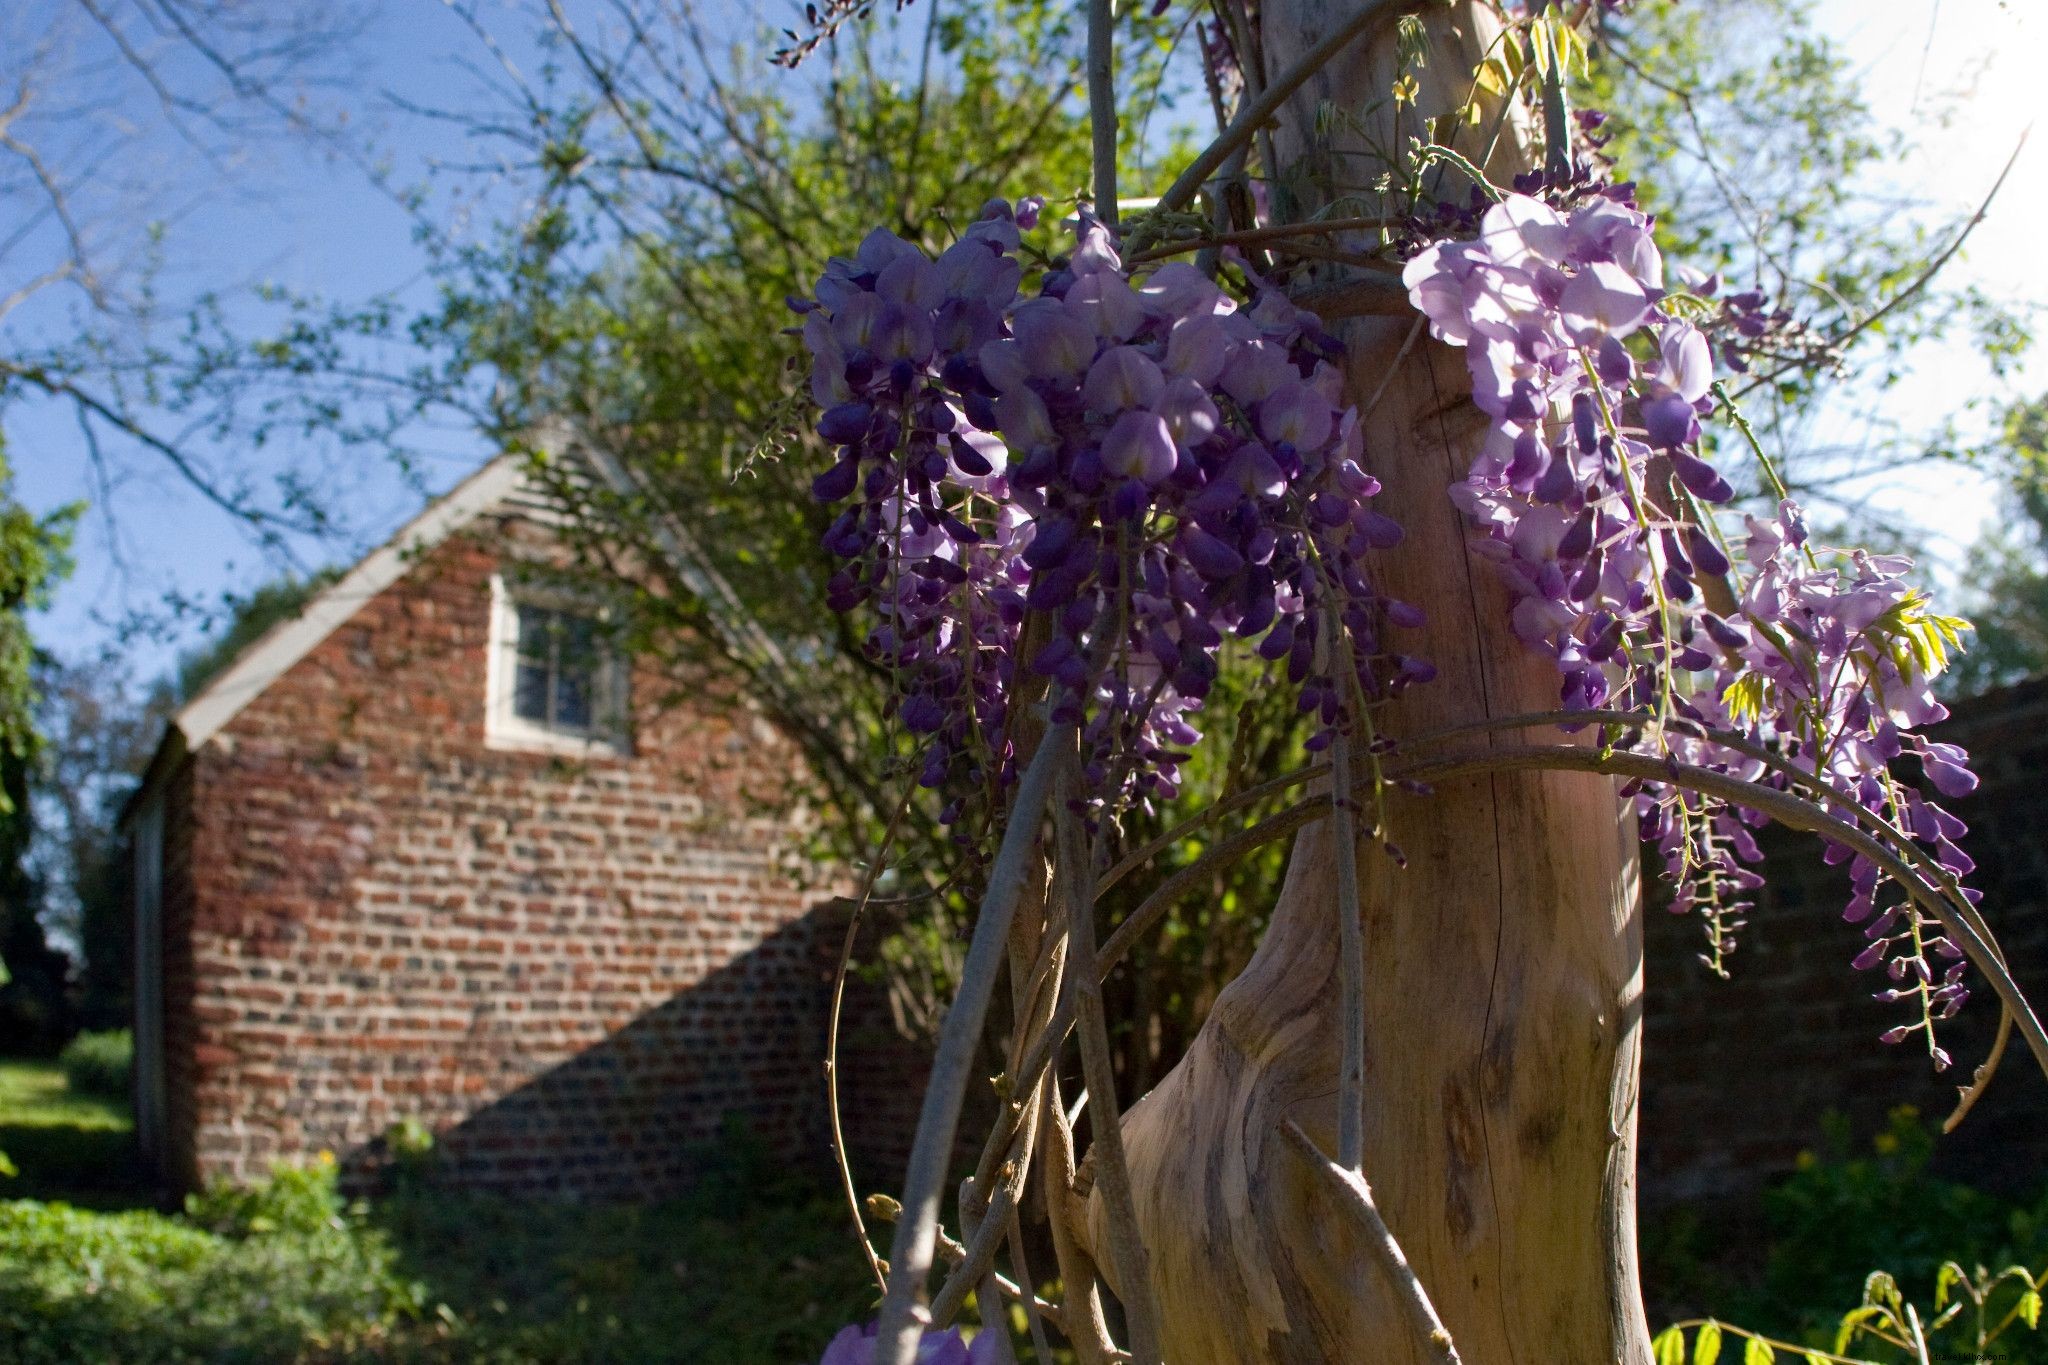 Semana del jardín histórico 2021:Los jardines de Virginia más impresionantes para las flores de primavera 